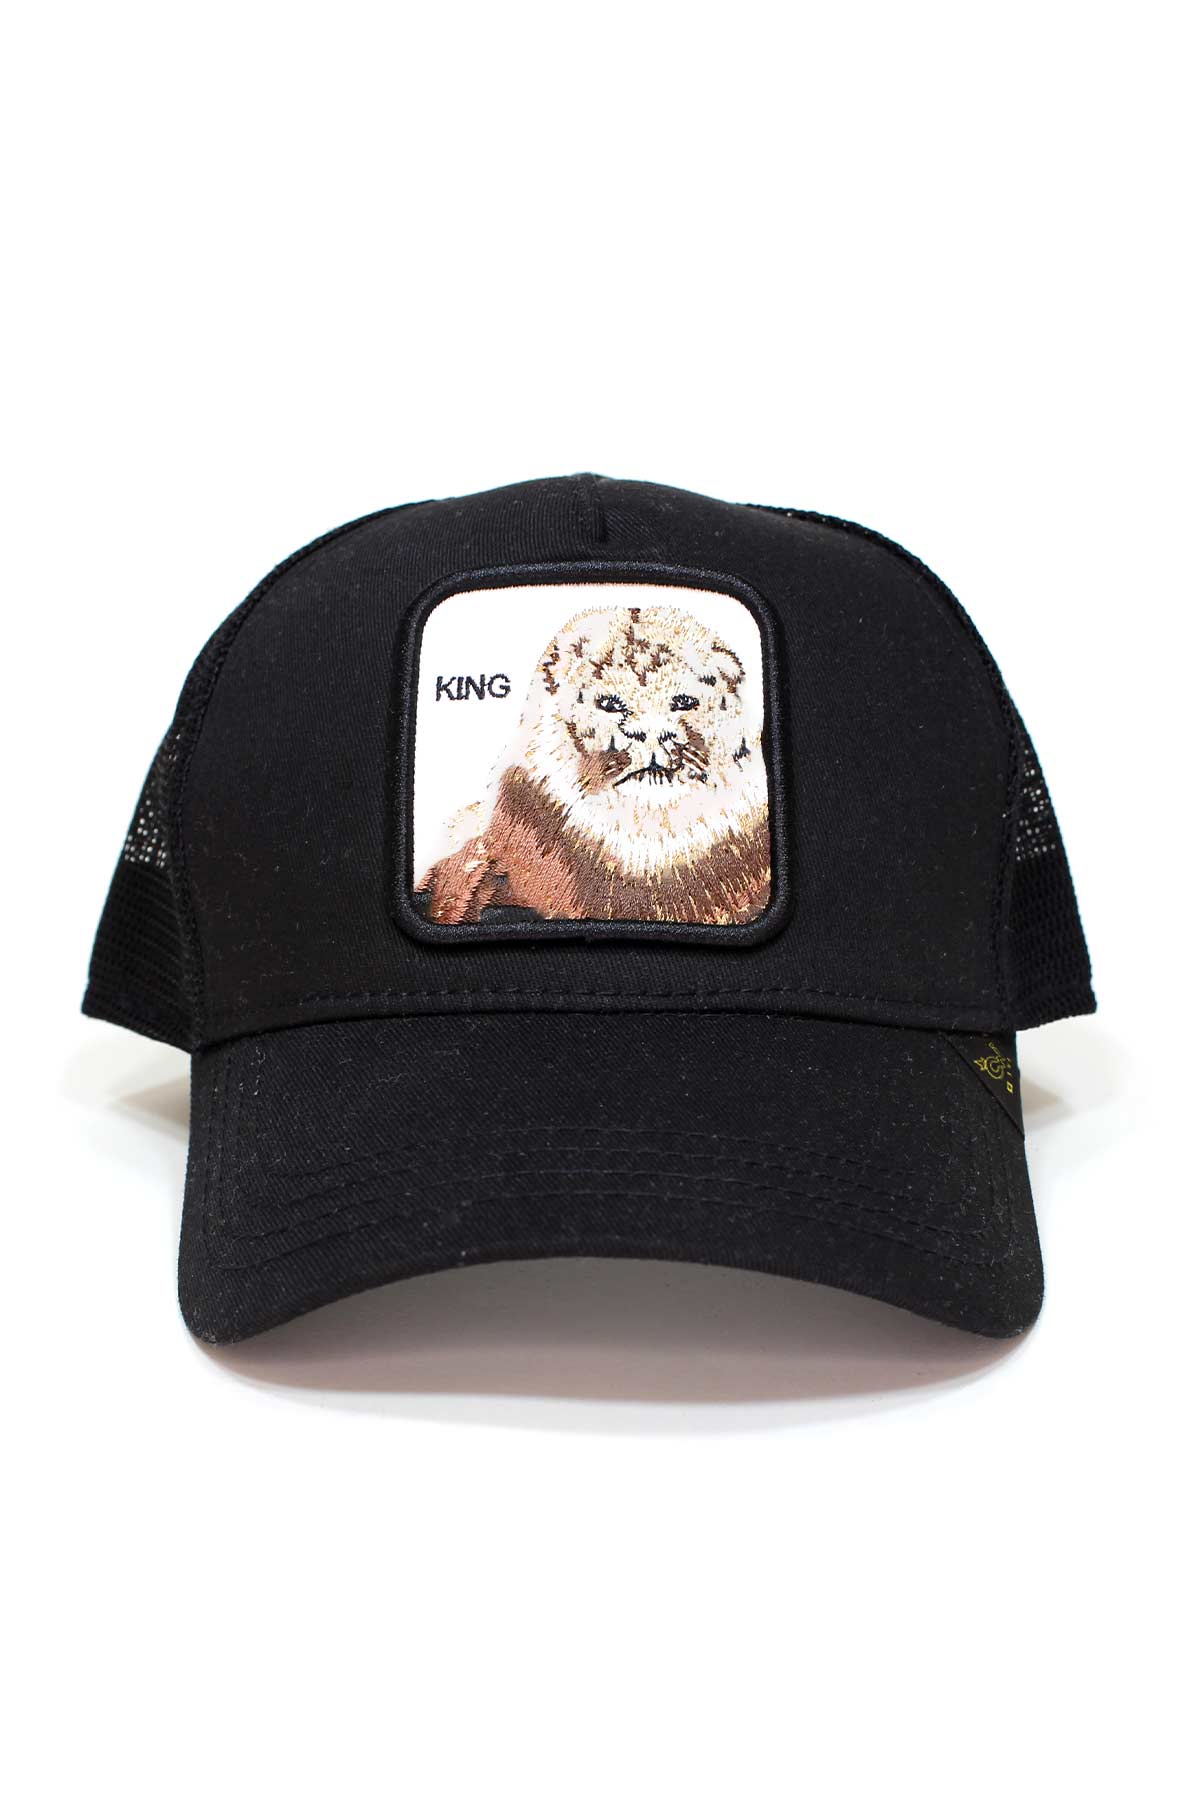 King Aslan Figürlü Nakışlı Fileli Şapka